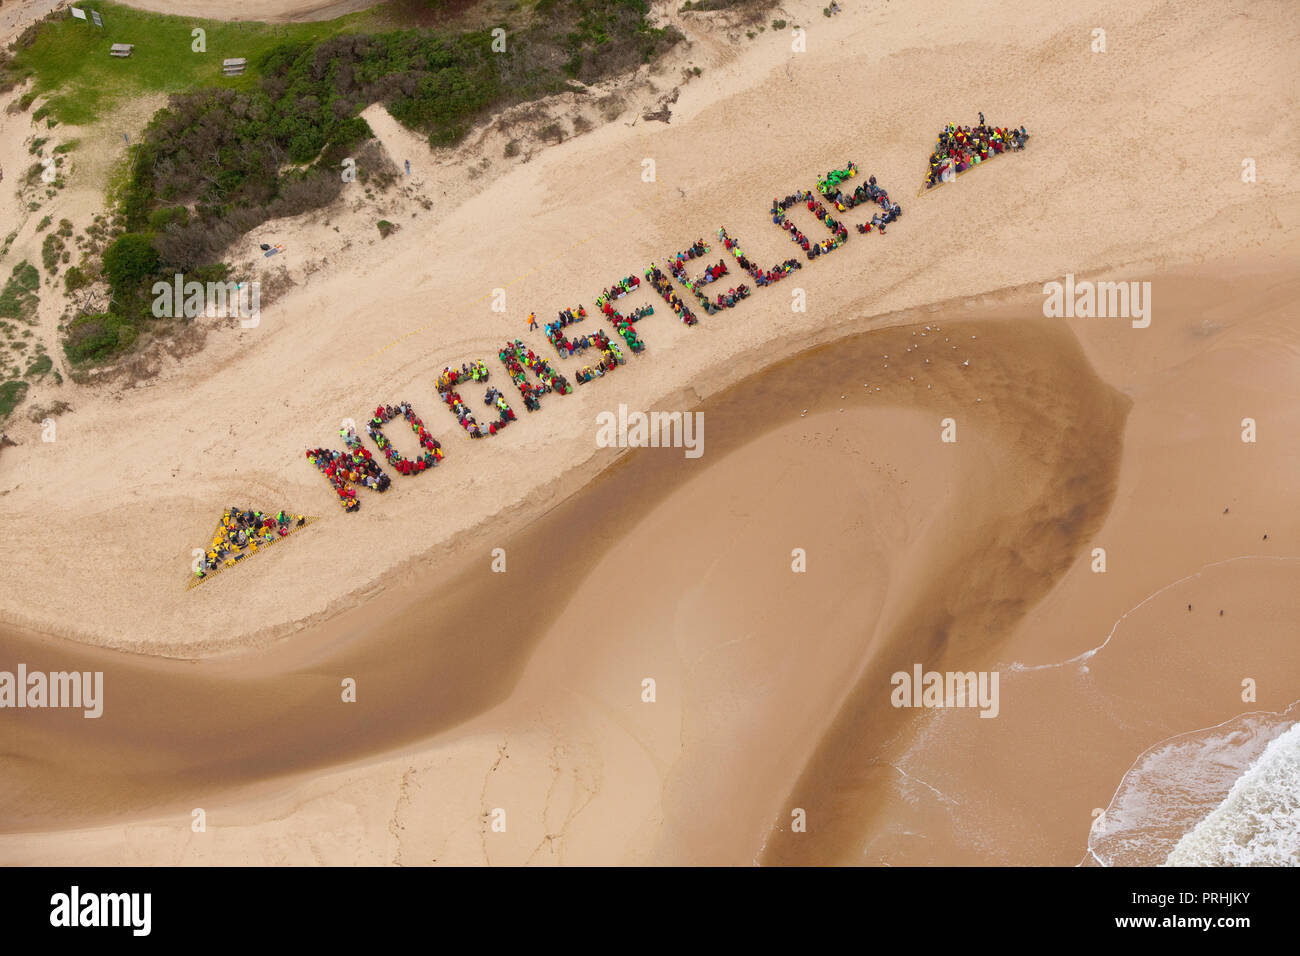 Protestation des habitants de charbon gaz naturel proposée par l'intermédiaire d'un 'Non' gisements signe humain sur la plage à Seaspray Gippsland, Australie. Banque D'Images